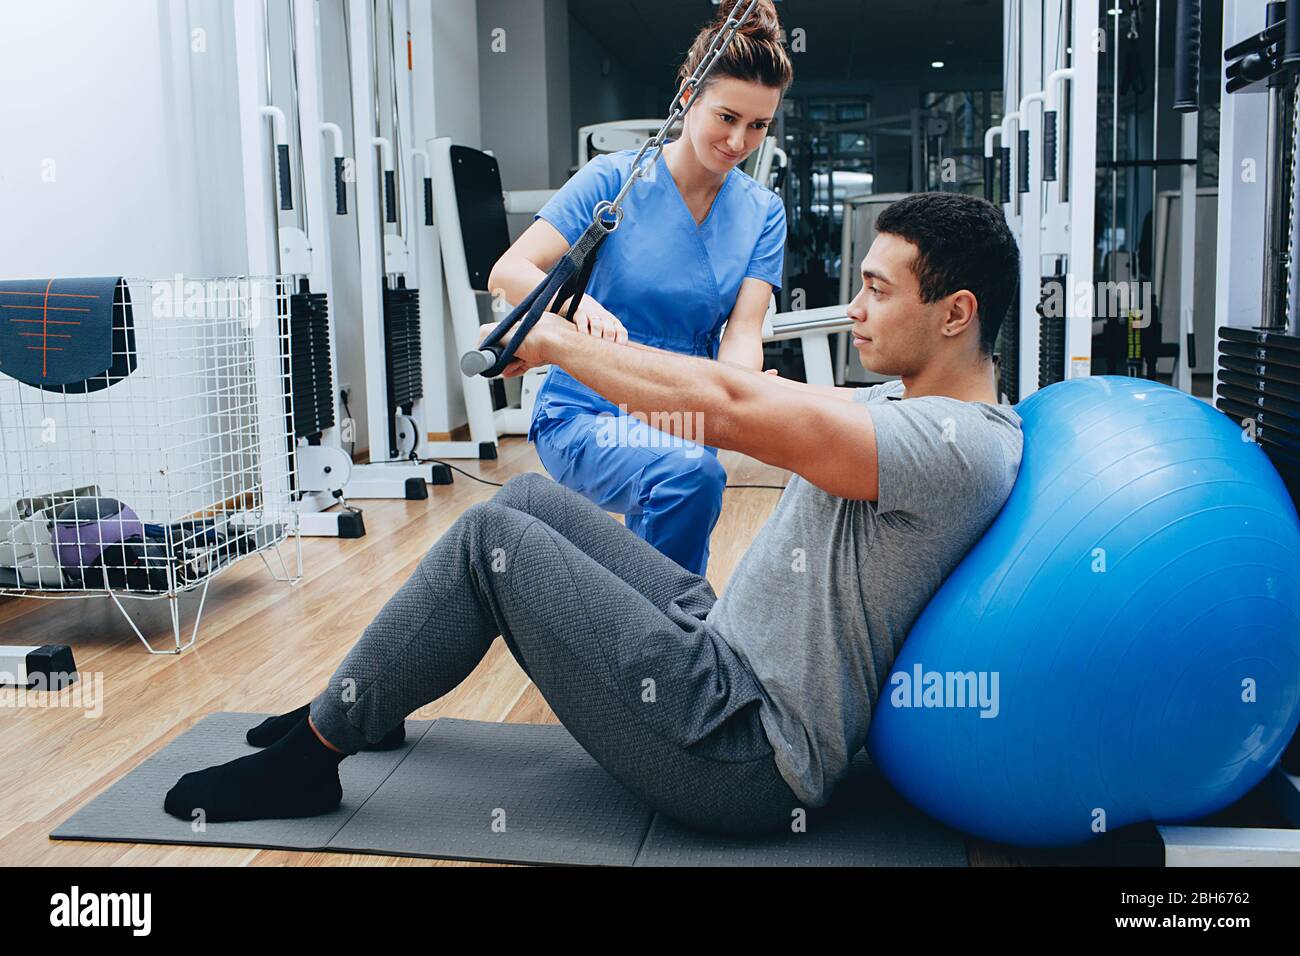 le kinésiologue aide un homme de race mixte à faire des exercices pour renforcer ses muscles du dos. traitement de la douleur du dos à l'aide de kinésithérapie. Banque D'Images